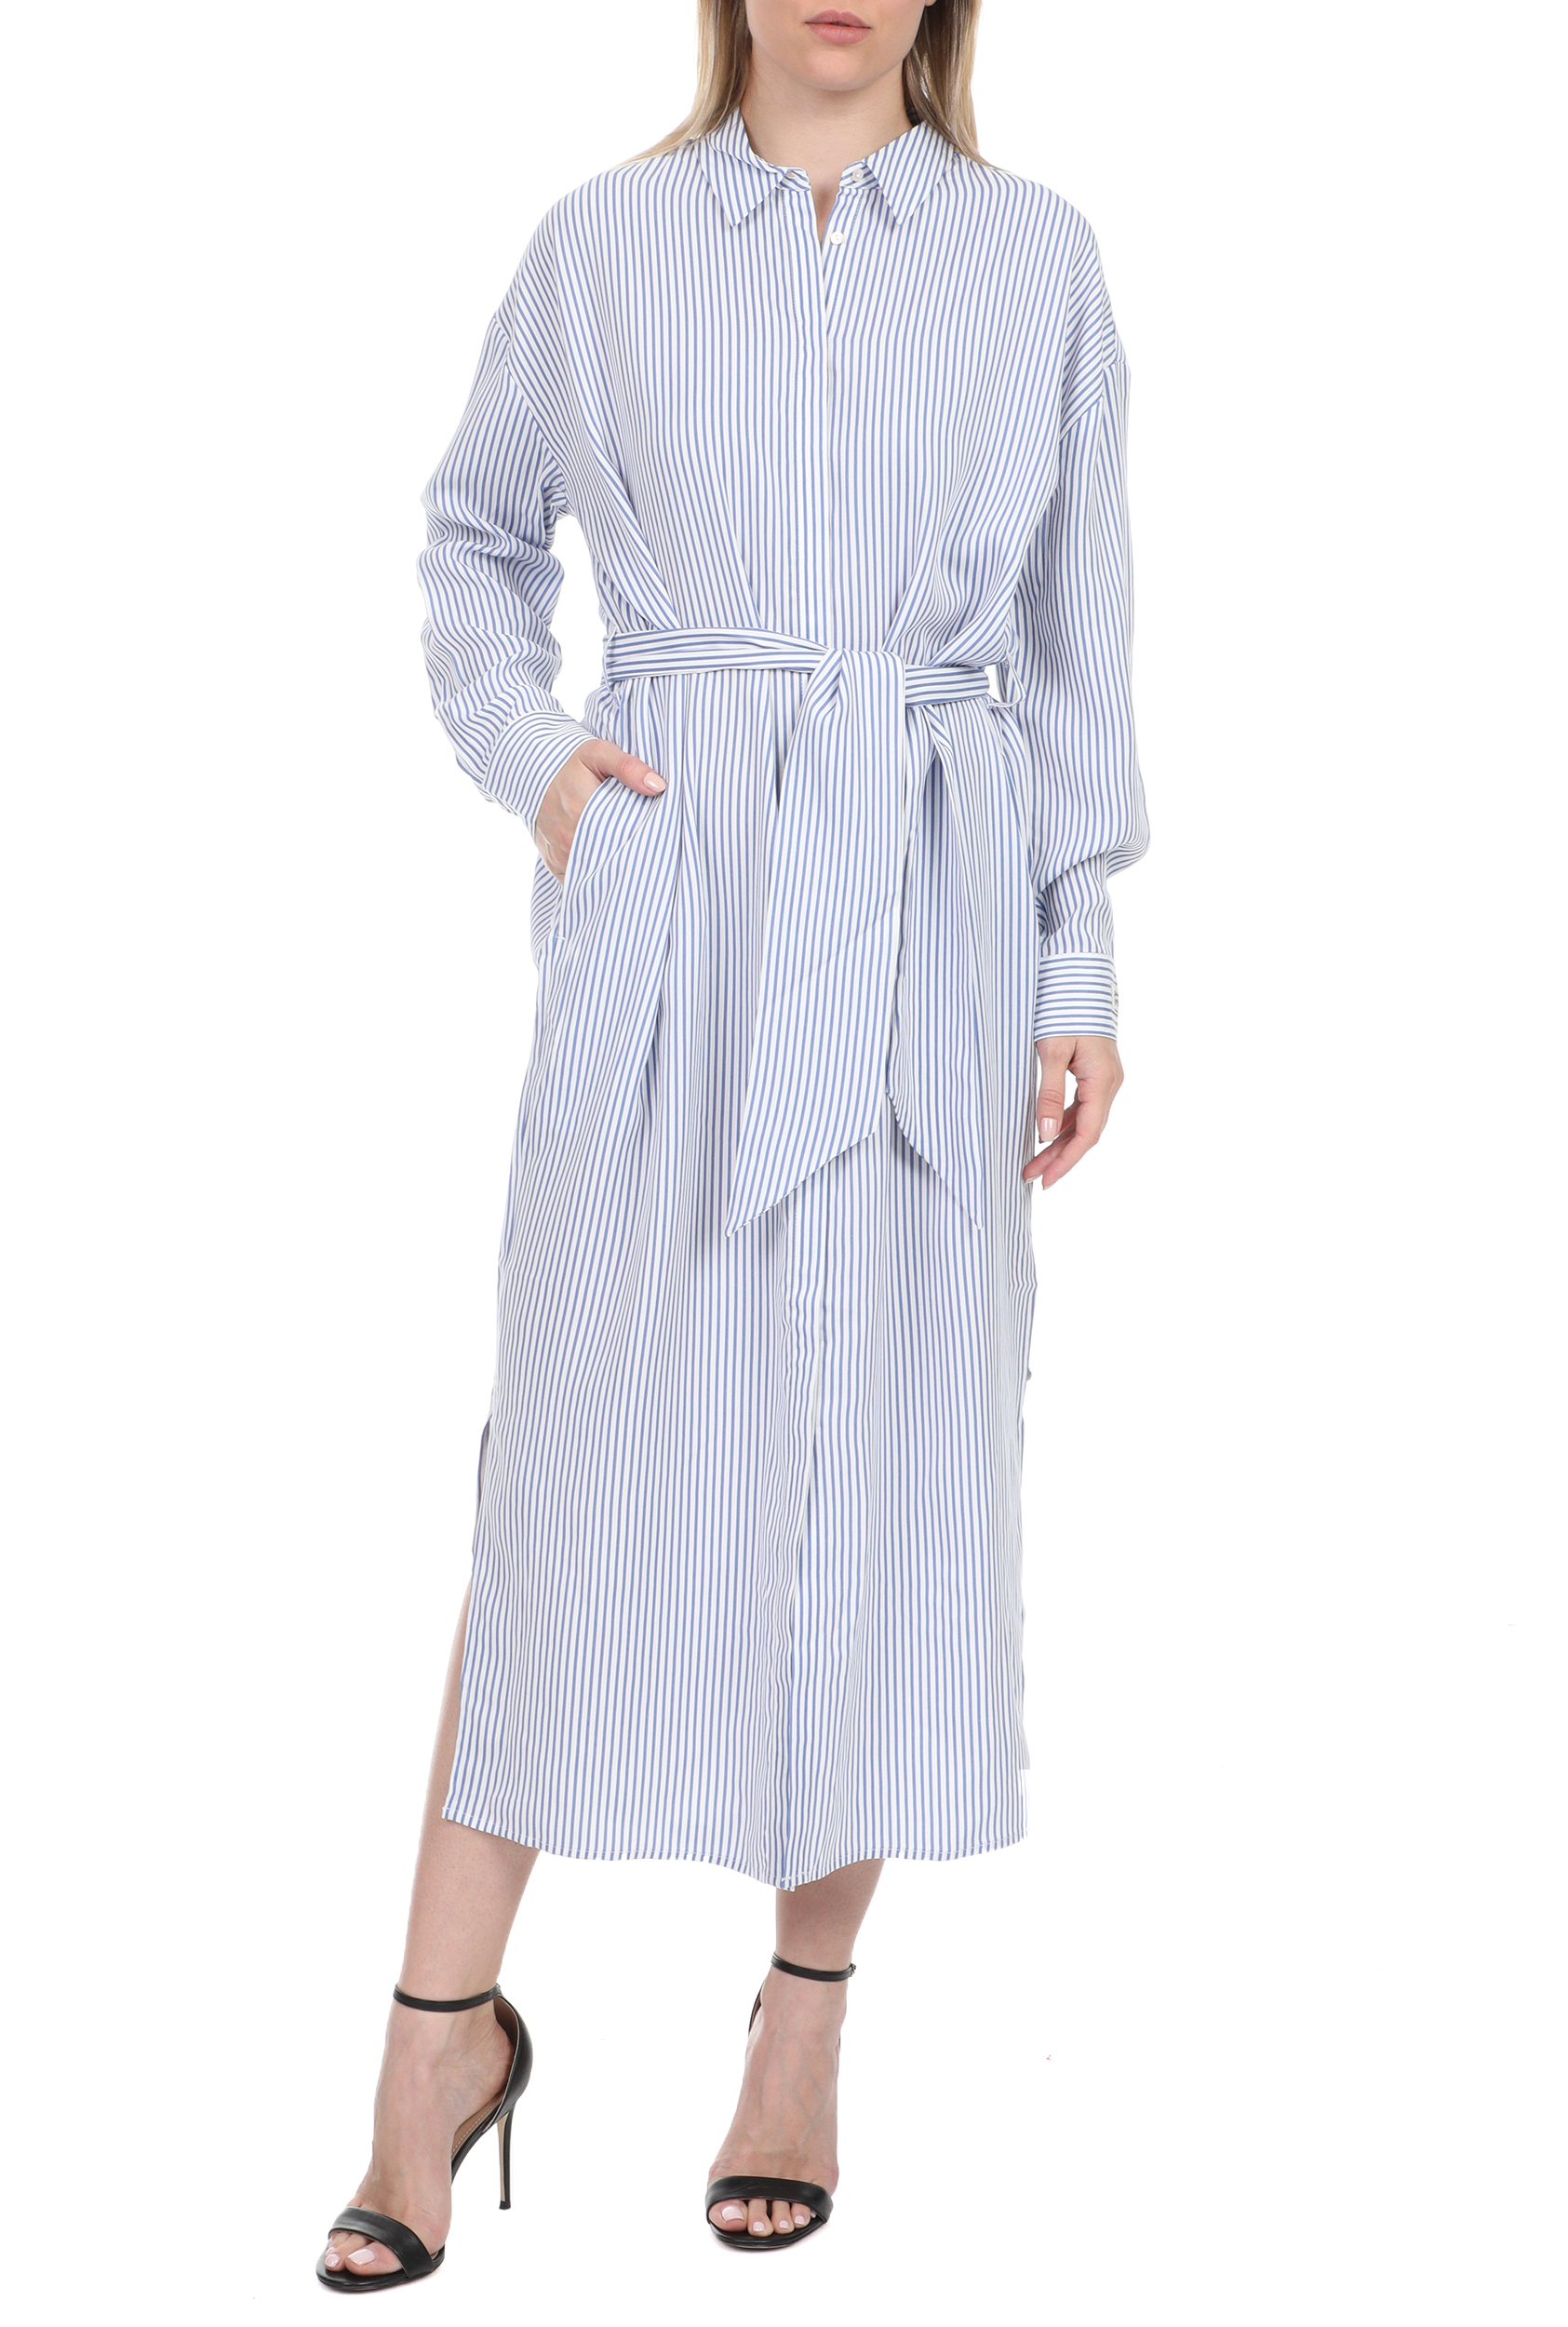 Γυναικεία/Ρούχα/Φορέματα/Μάξι SCOTCH & SODA - Γυναικείο μακρύ φόρεμα SCOTCH & SODA μπλε λευκό